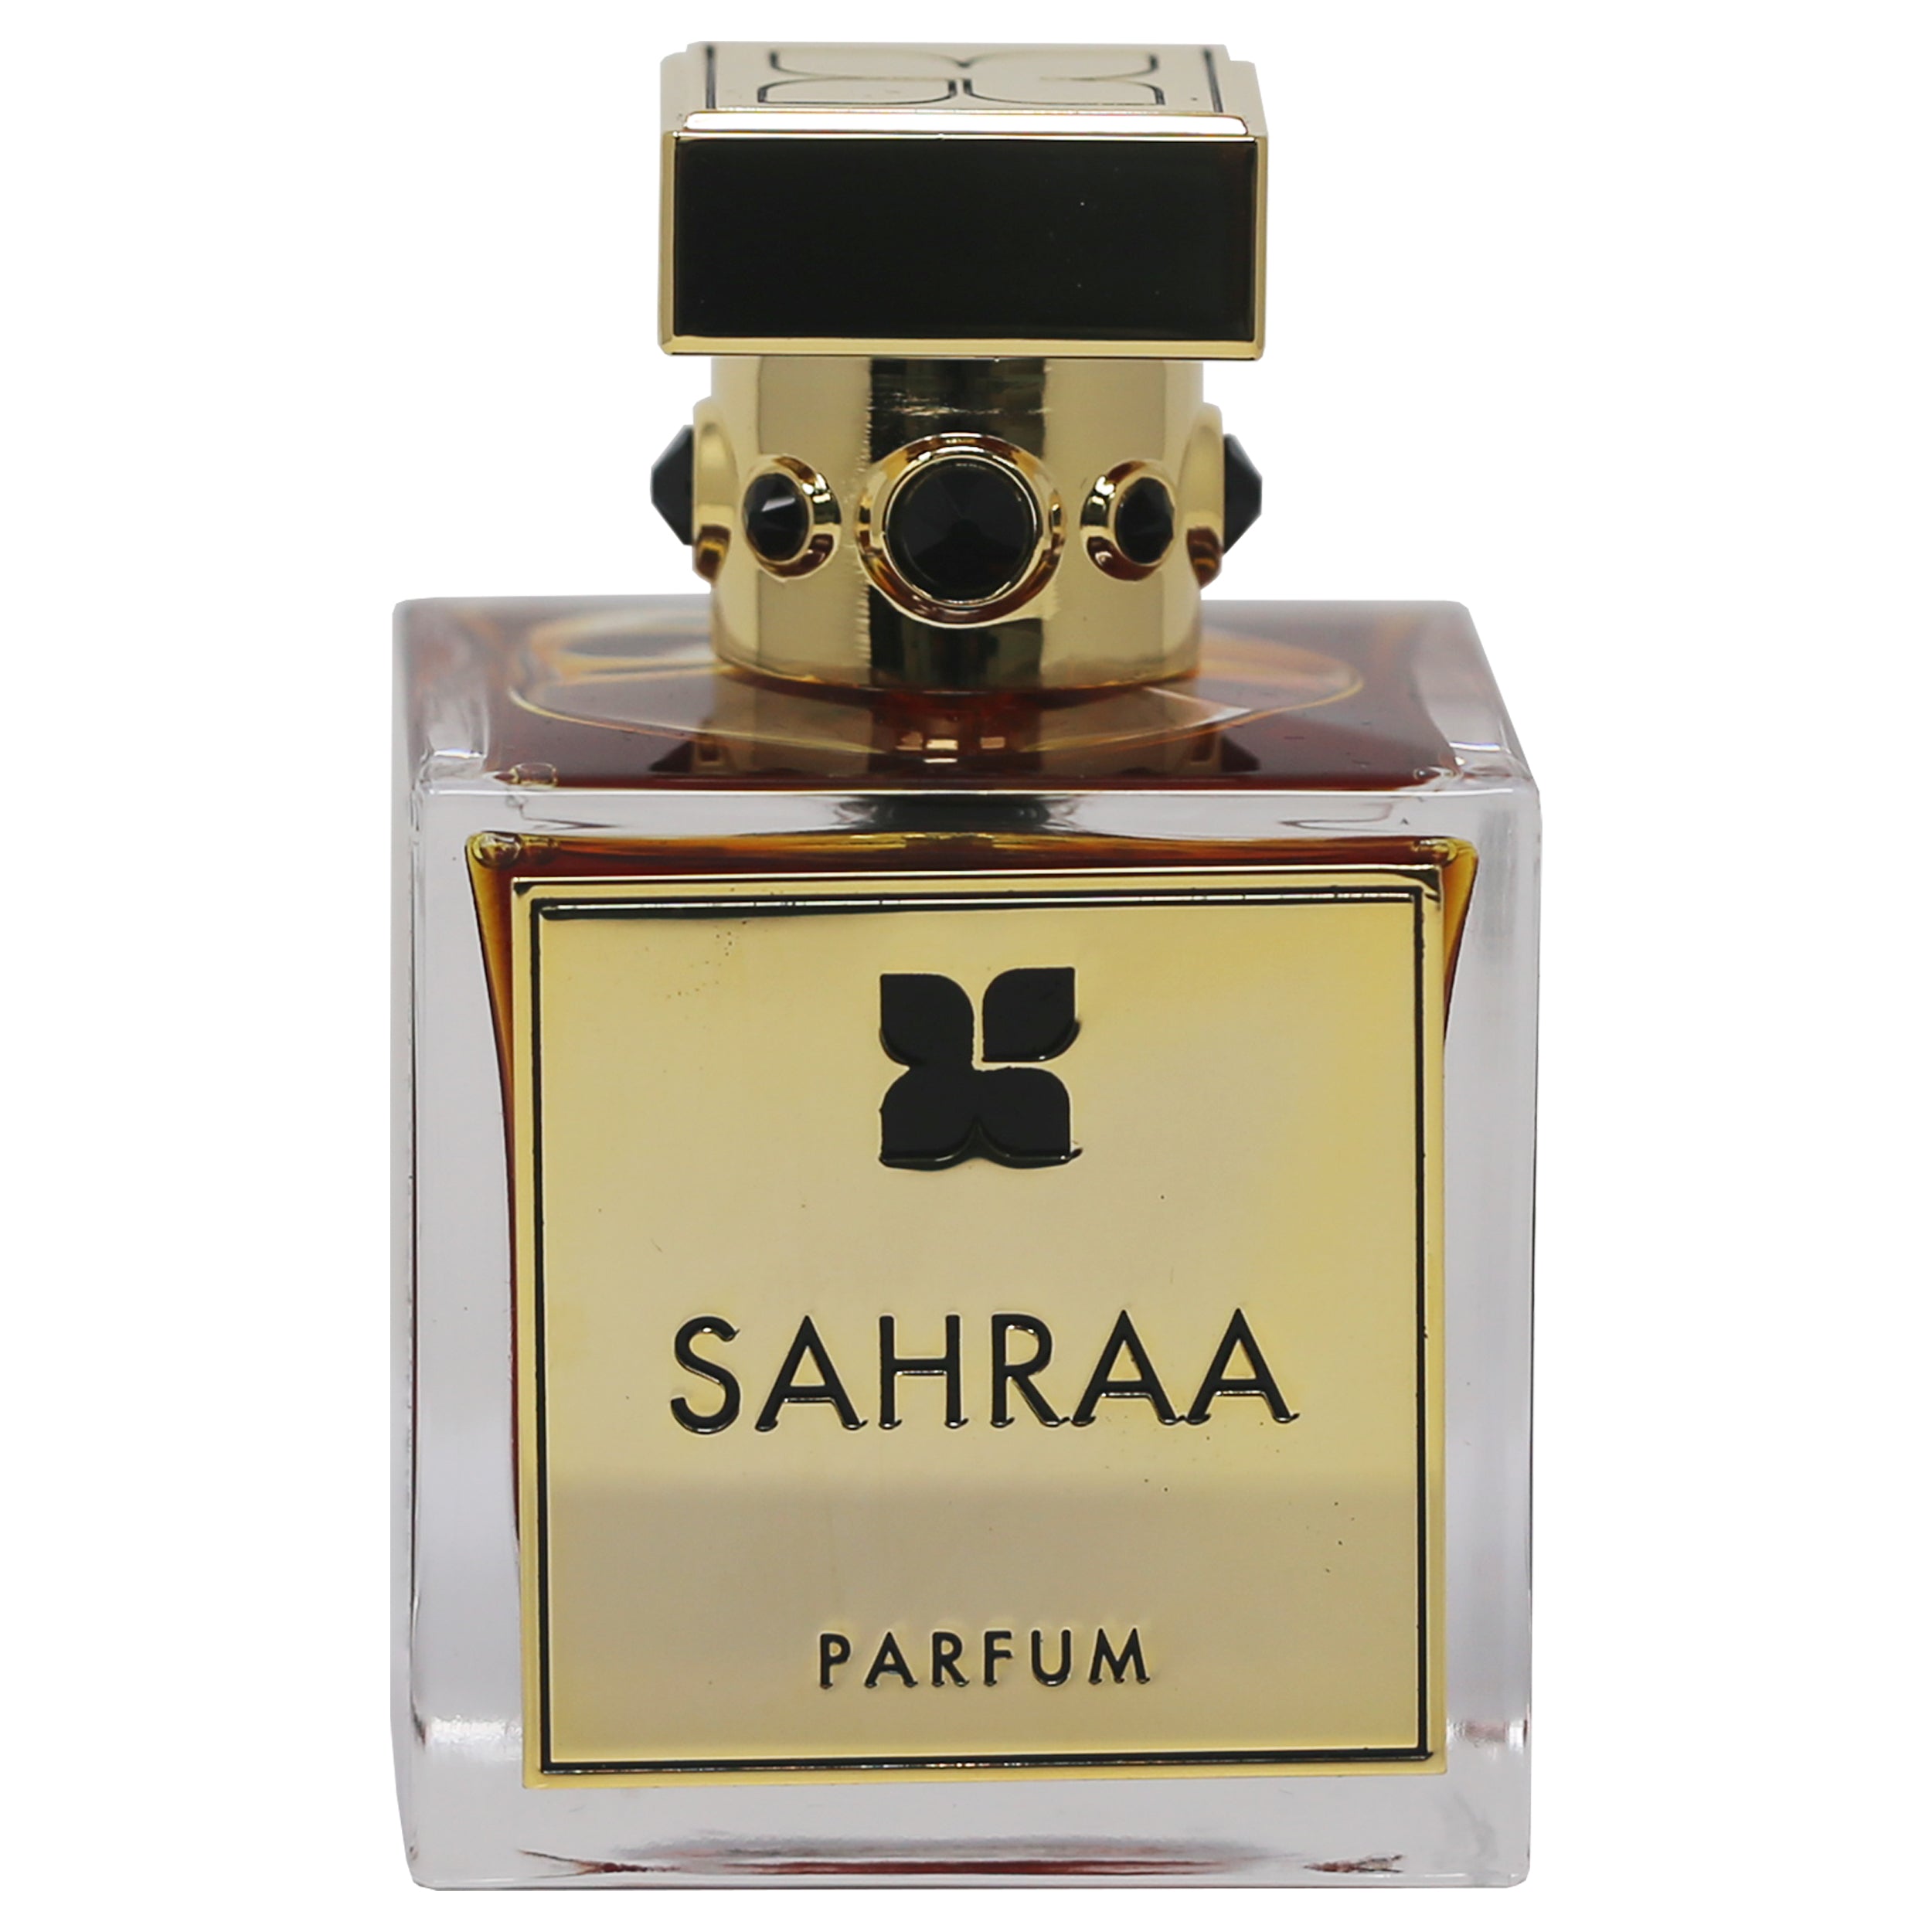  Fragrance du Bois Parisian Oud Eau de Parfum 100 ml